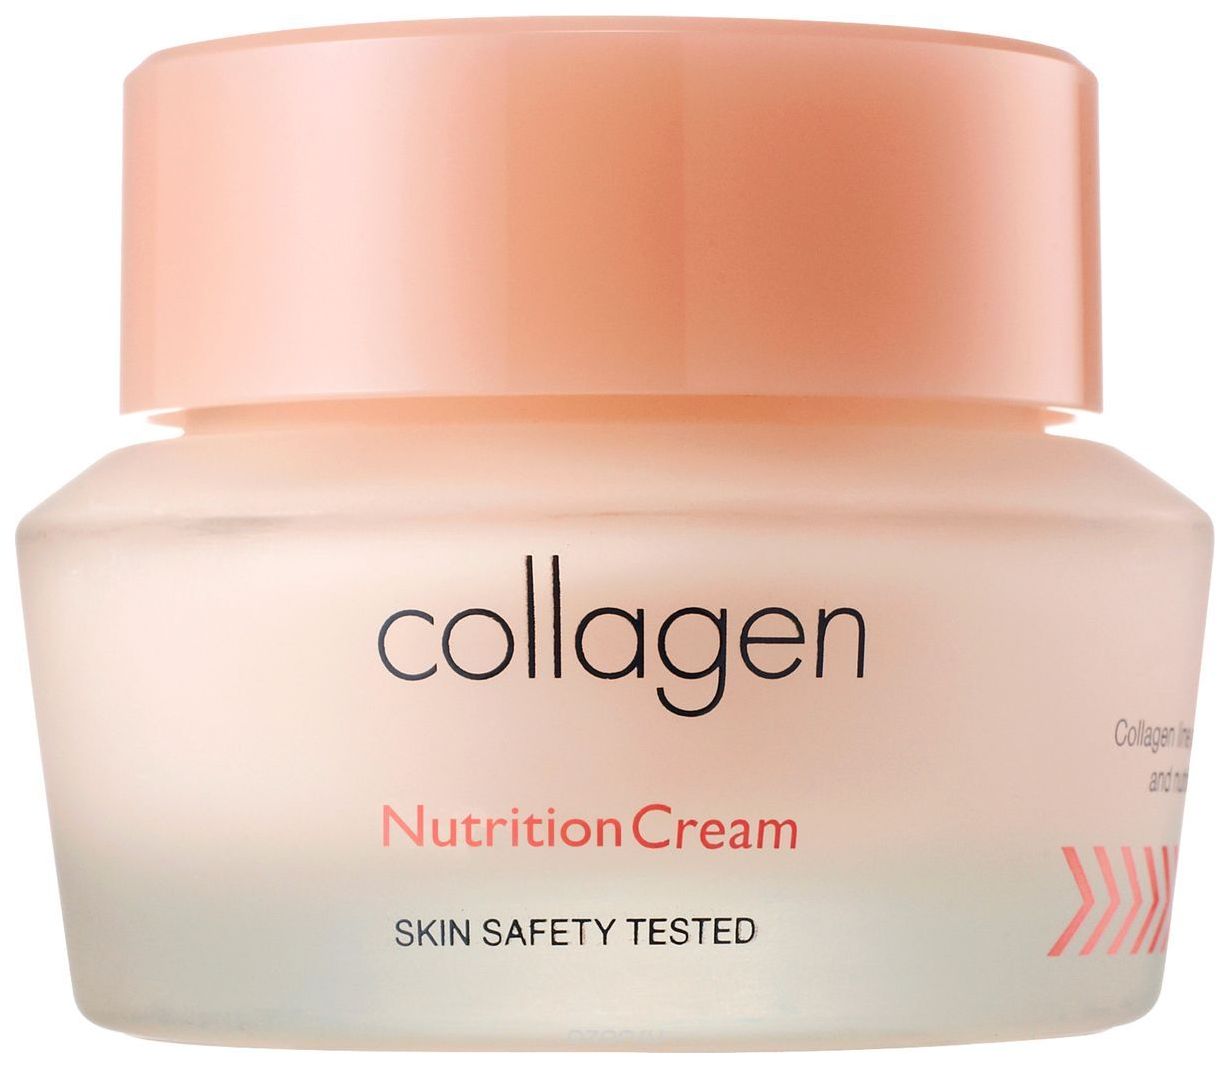 Купить Питательный крем для лица с коллагеном Its Skin Collagen Nutrition Cream, Питательный крем для лица Collagen Nutrition Cream, It's Skin